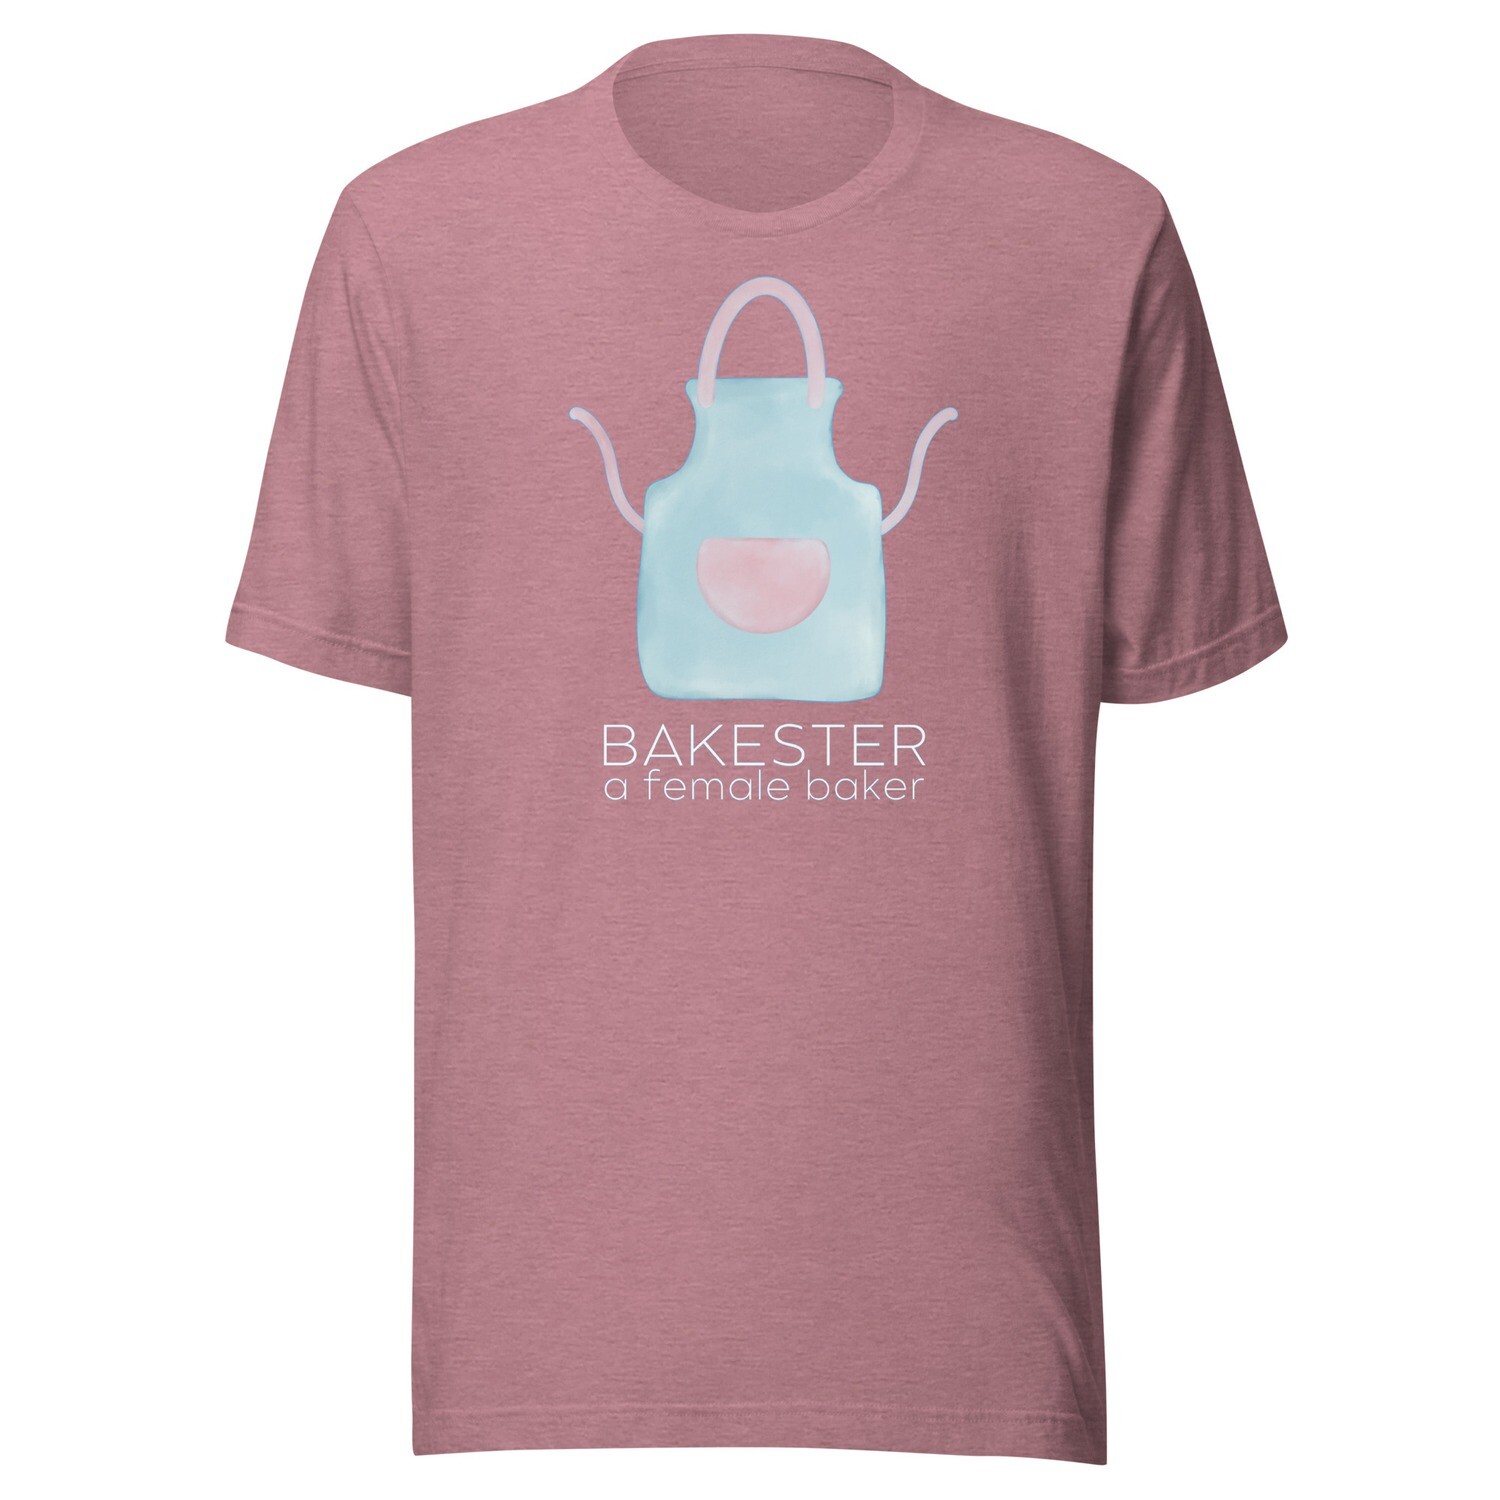 'Bakesters' Adult Unisex Tee